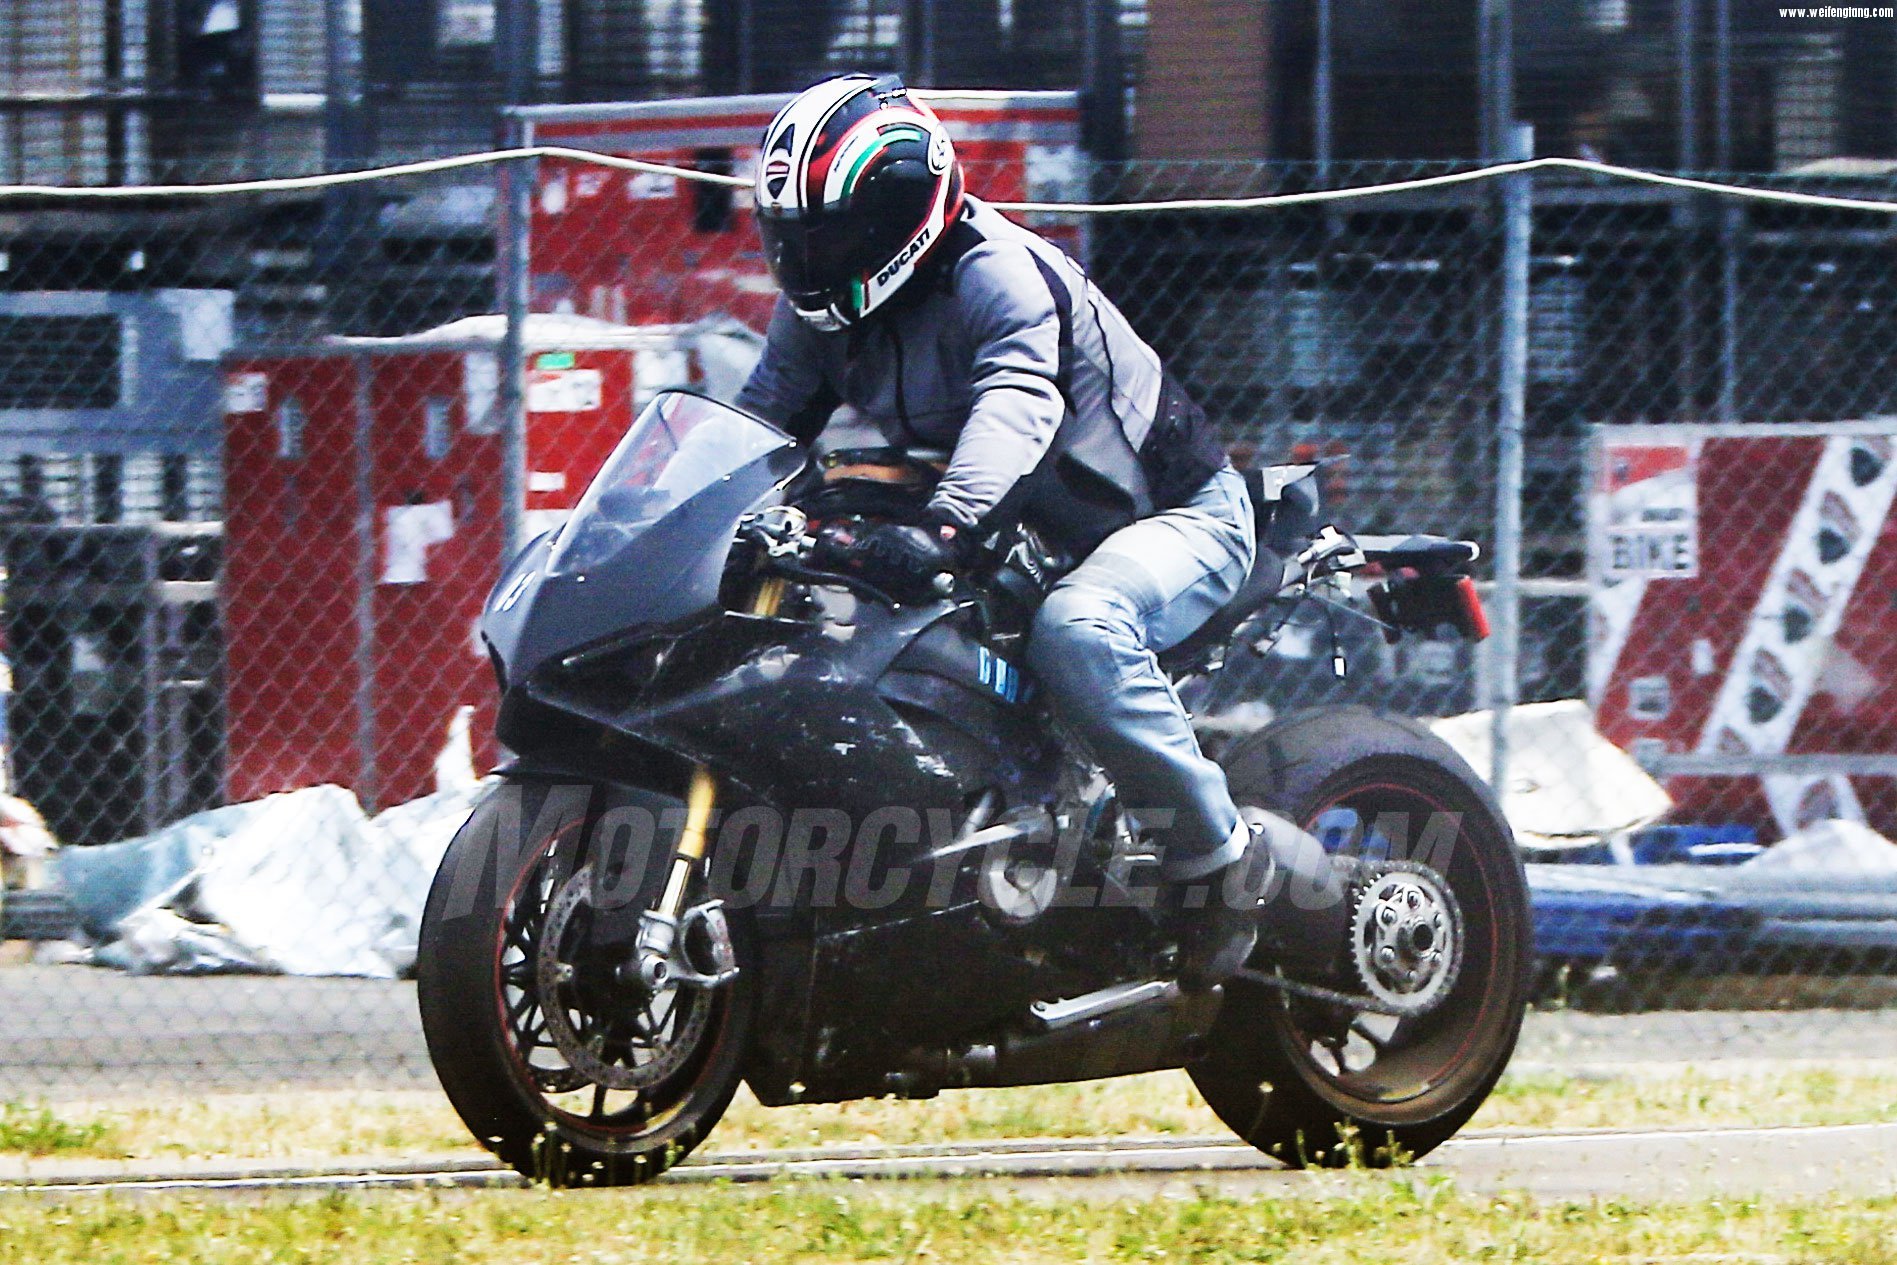 062817-2018-Ducati-V4-Superbike-005.jpg